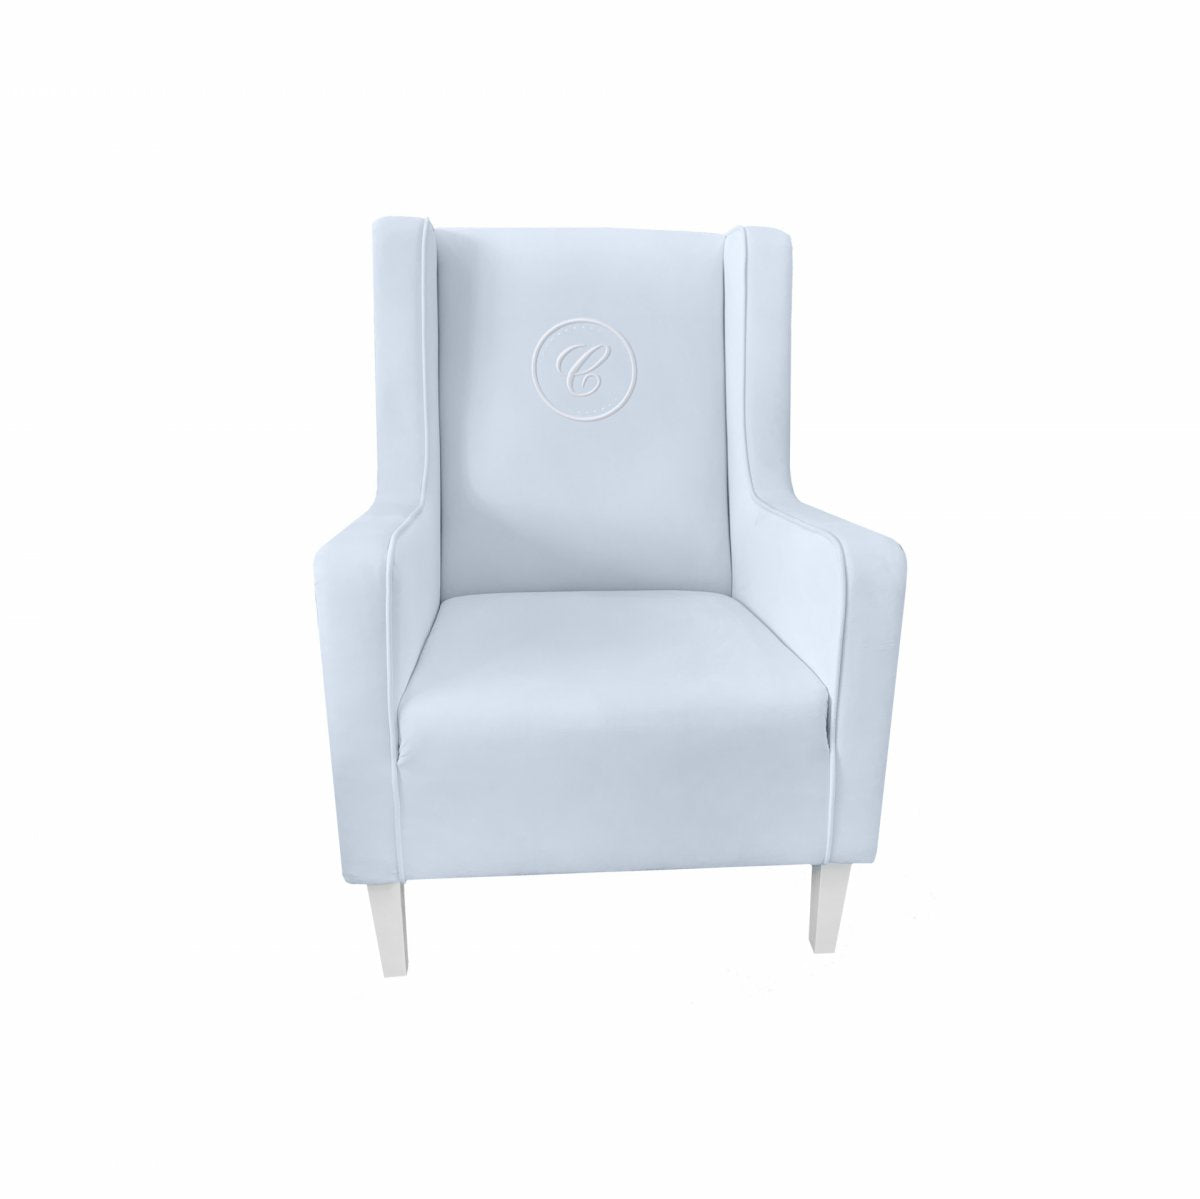 Armchair Modern Blue with Emblem